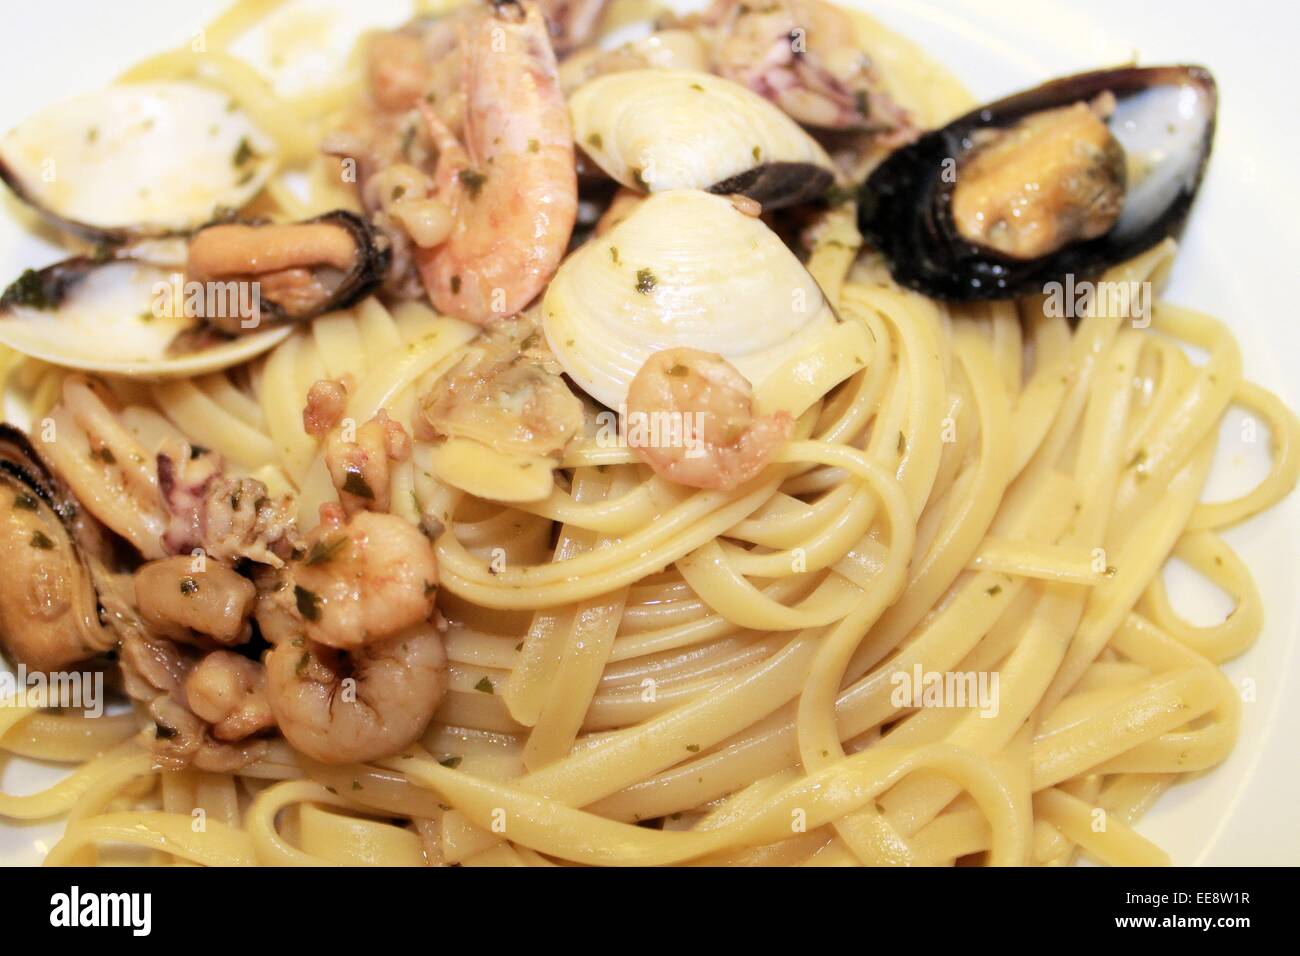 Les pâtes spaghetti aux crevettes, les moules et les palourdes Banque D'Images